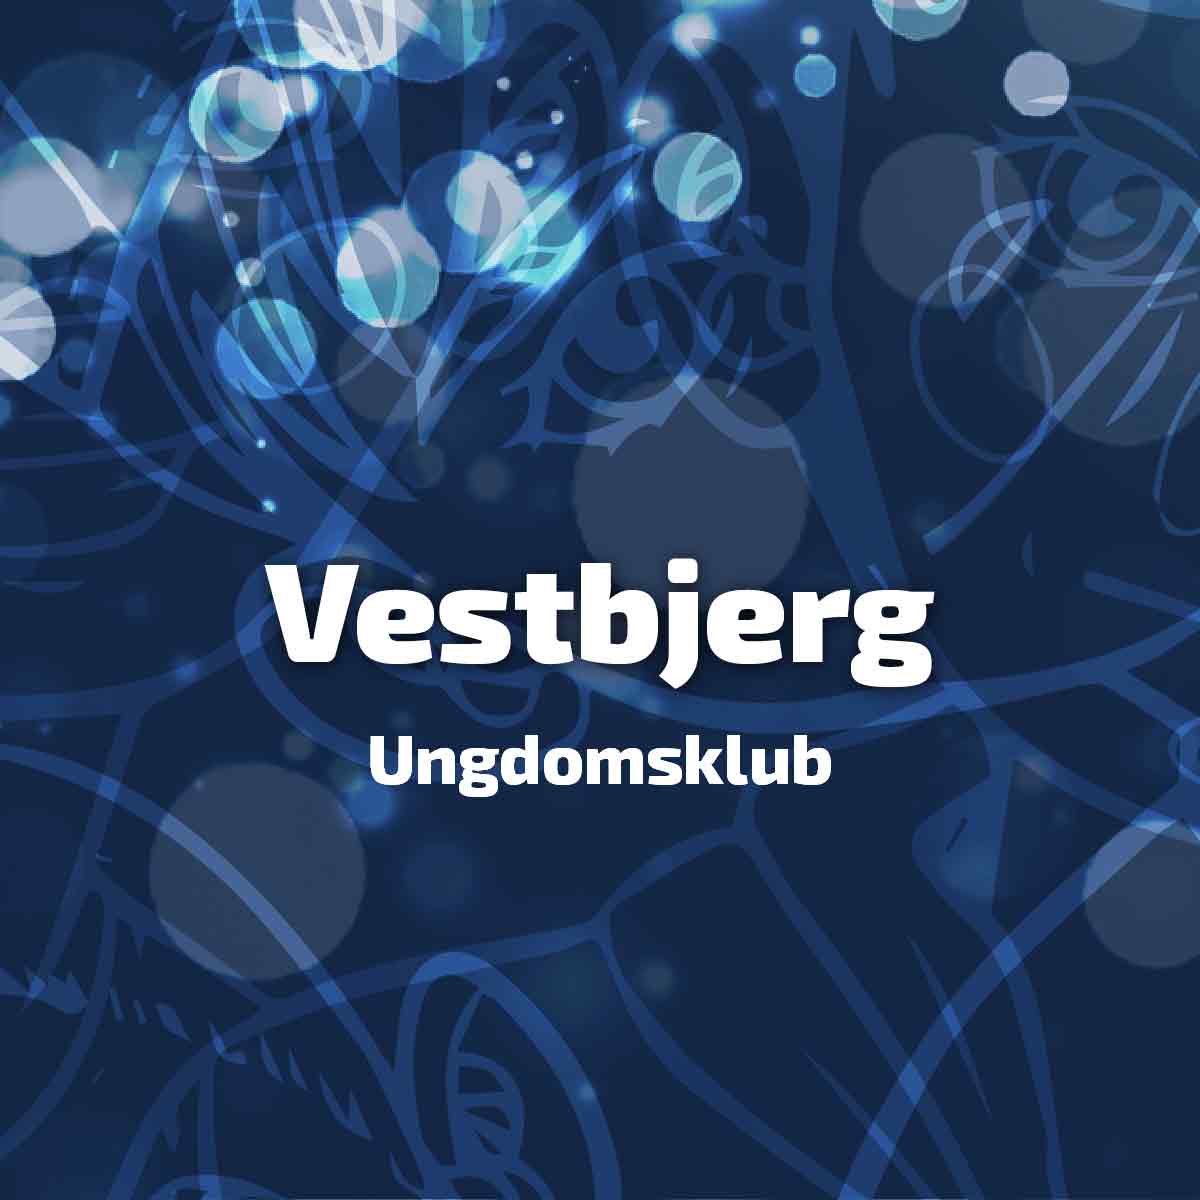 Vestbjerg Ungdomsklub